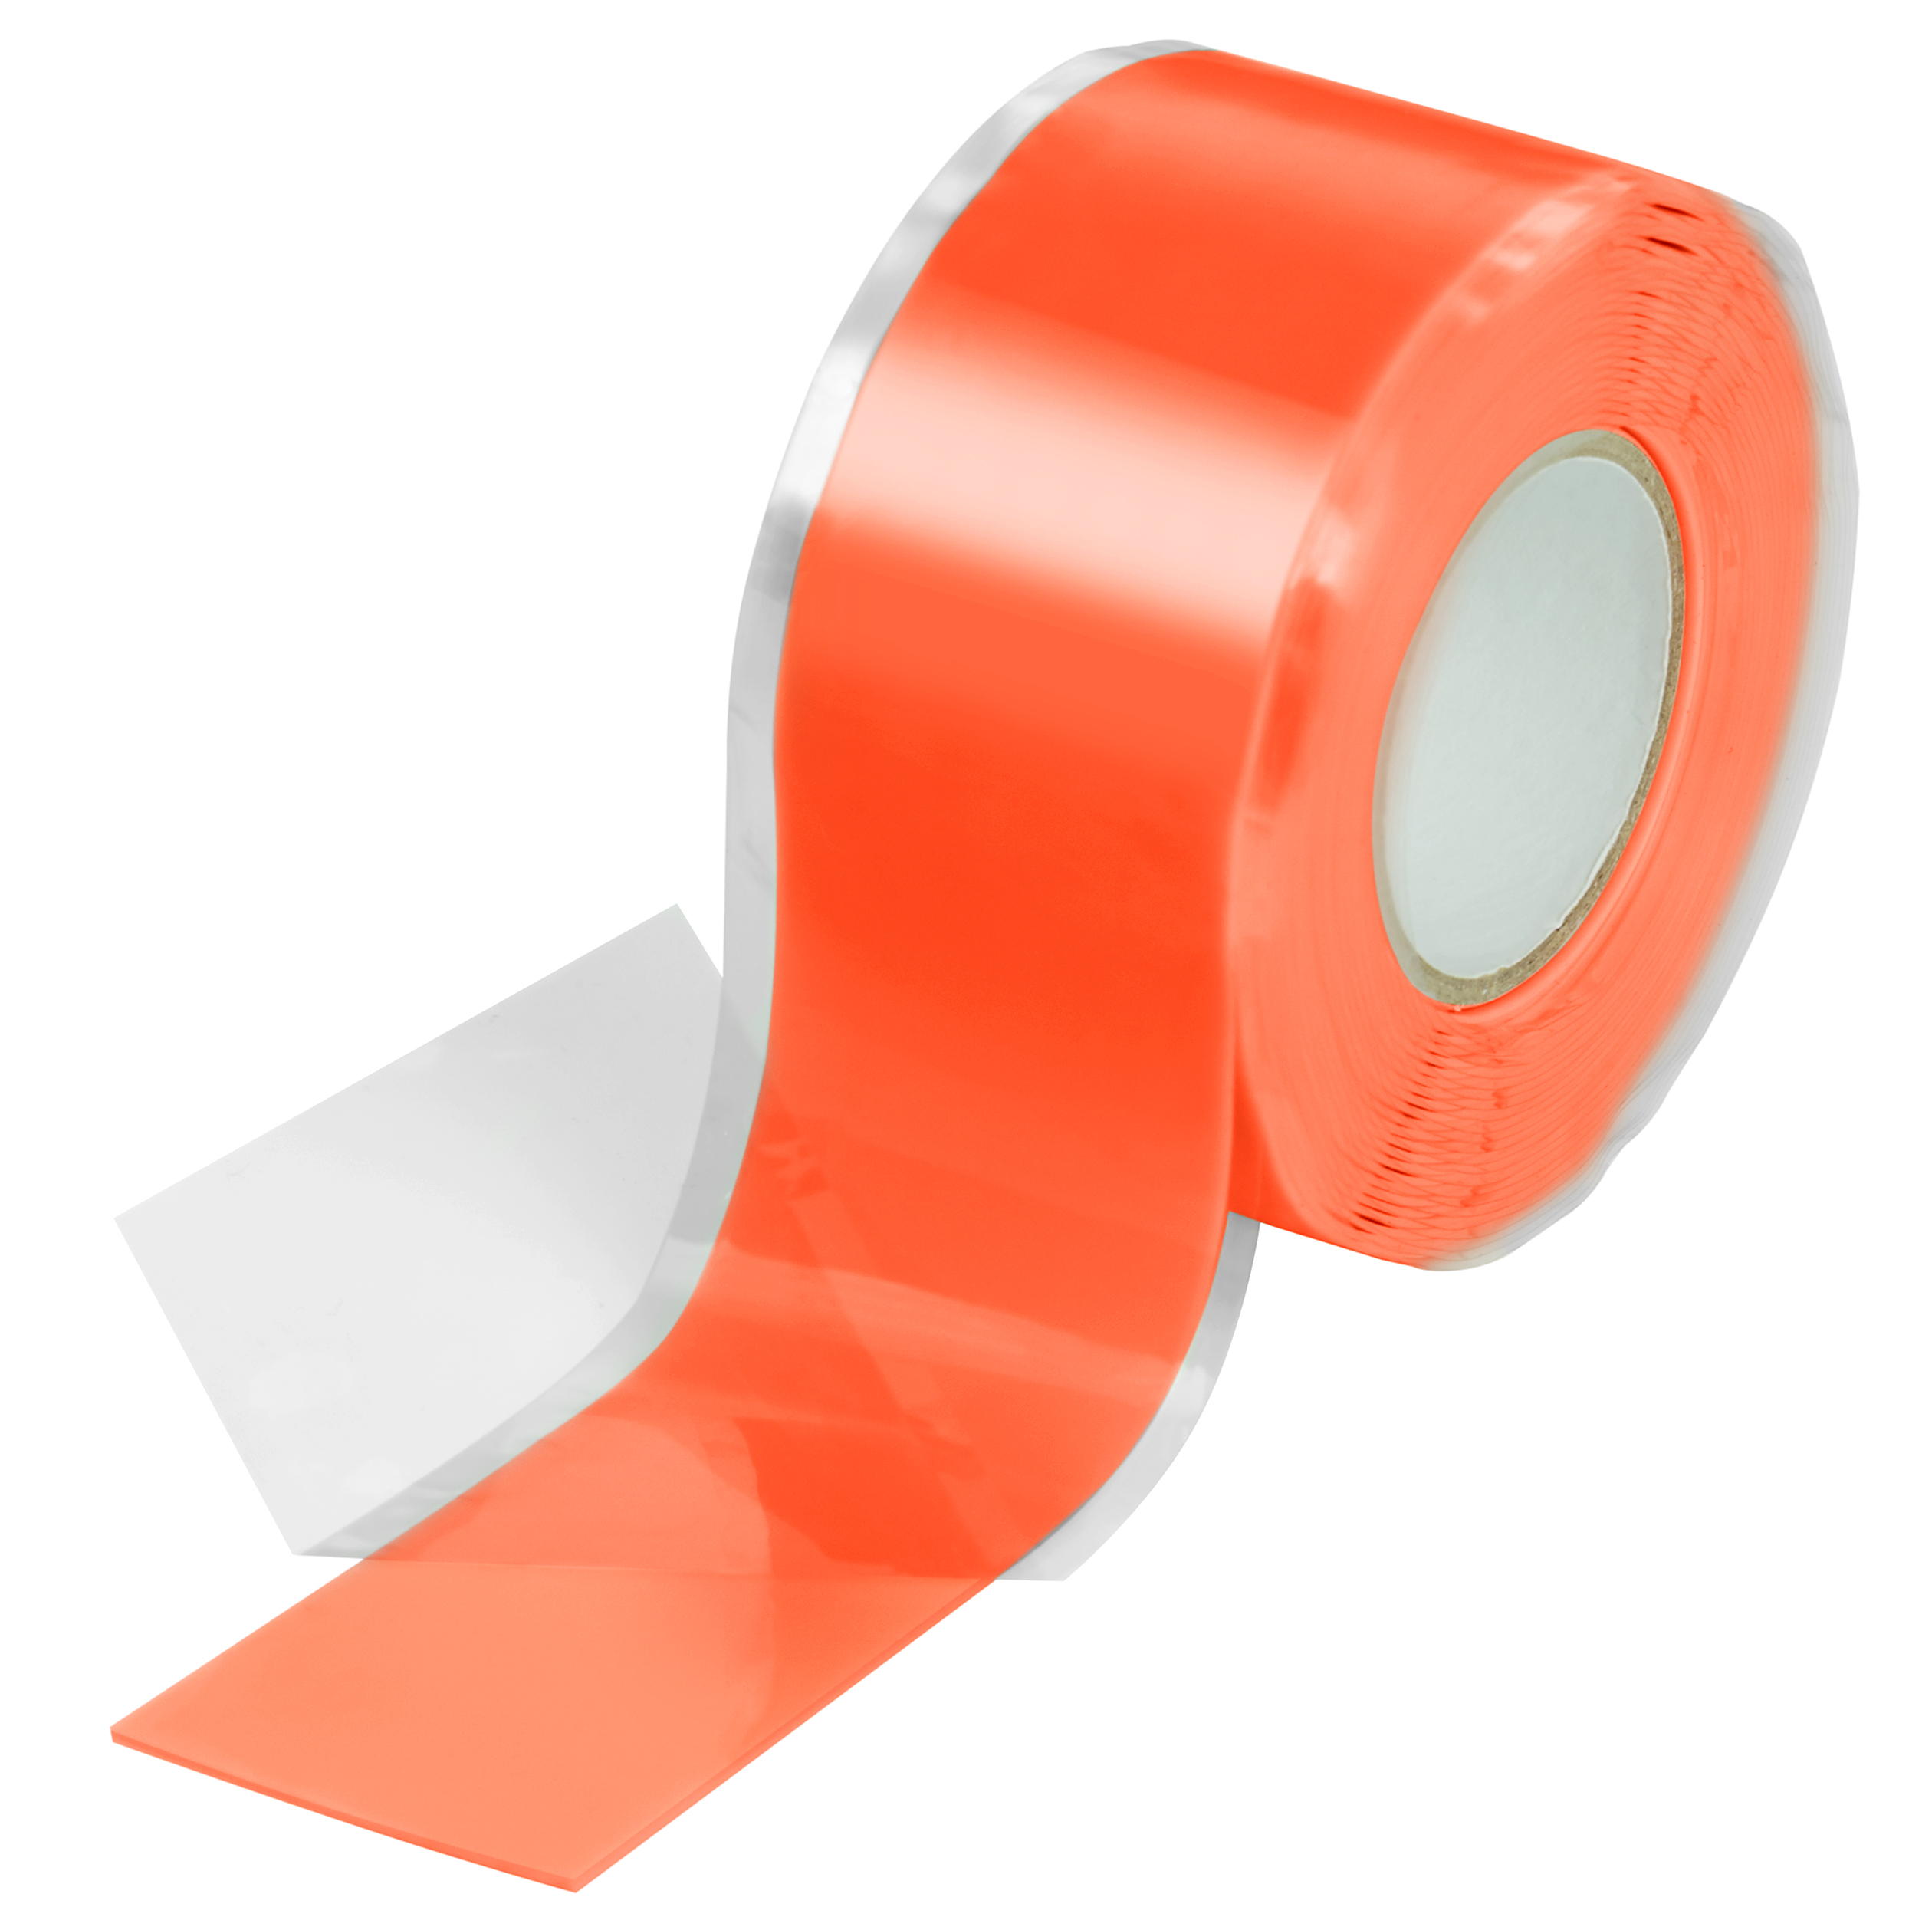 Poppstar selbstverschweißendes Silikonband orange 3m x 25mm